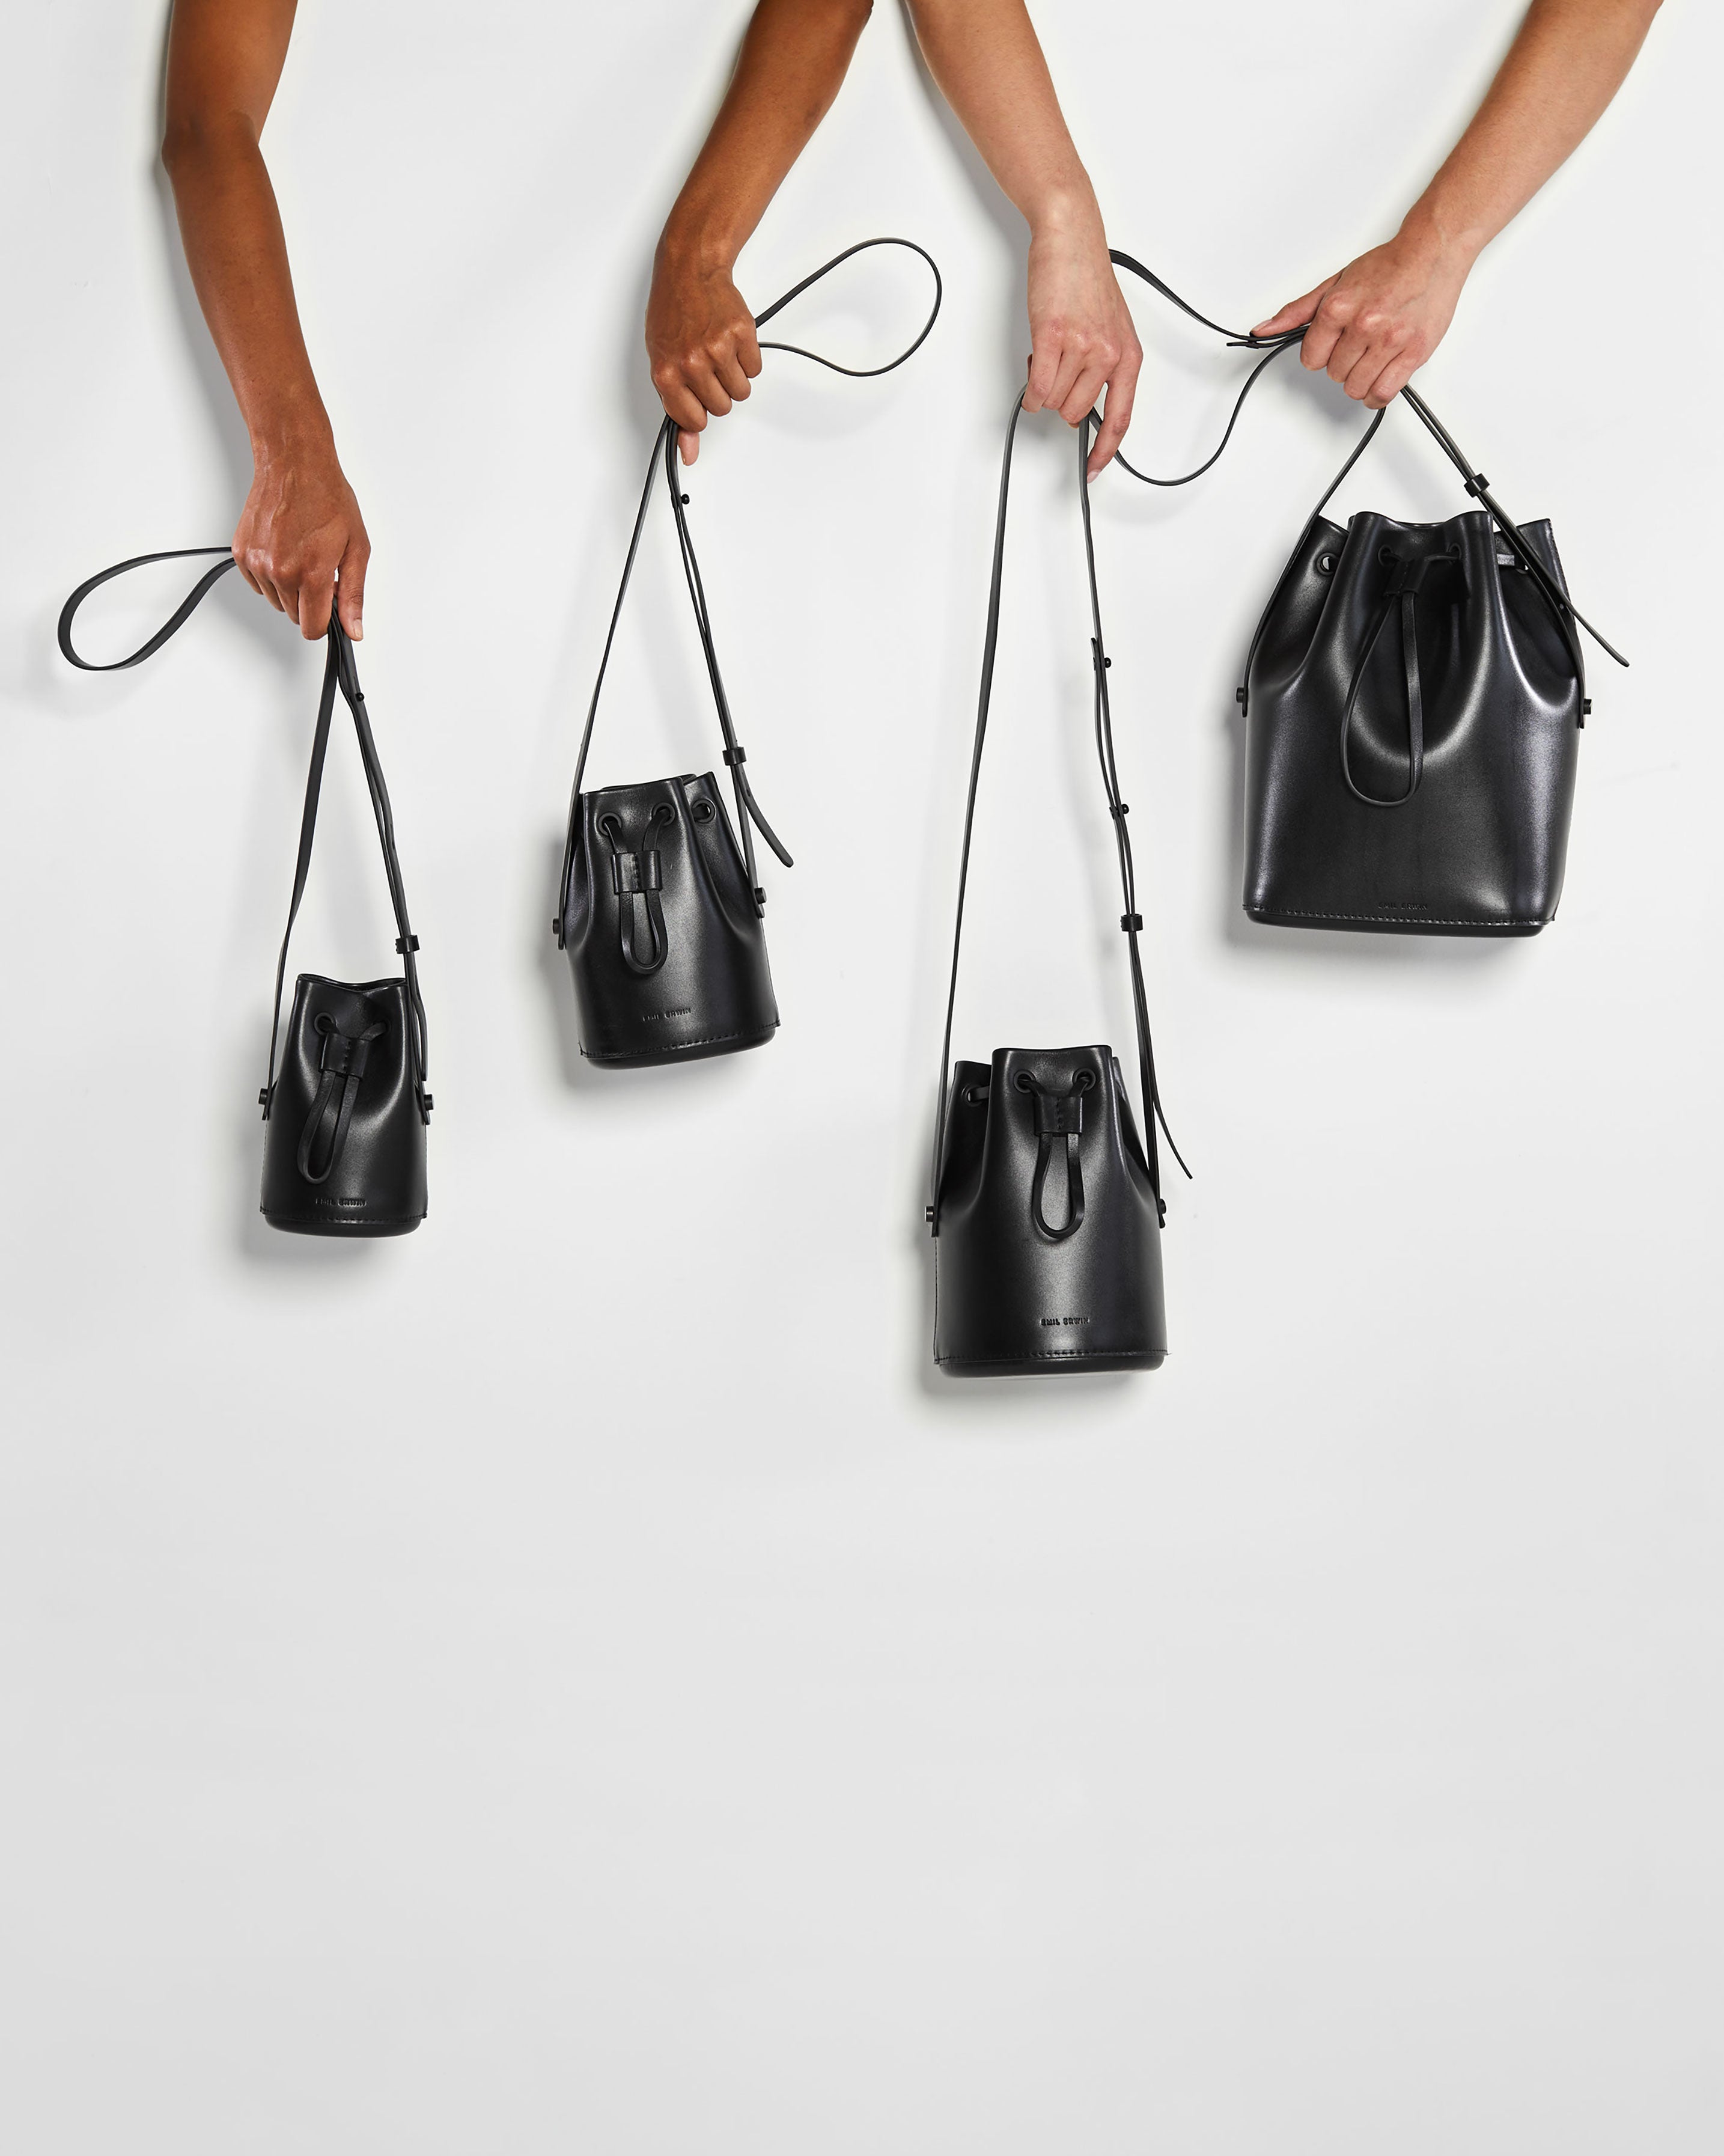 Mini Bucket Bags, Small Bucket Handbags